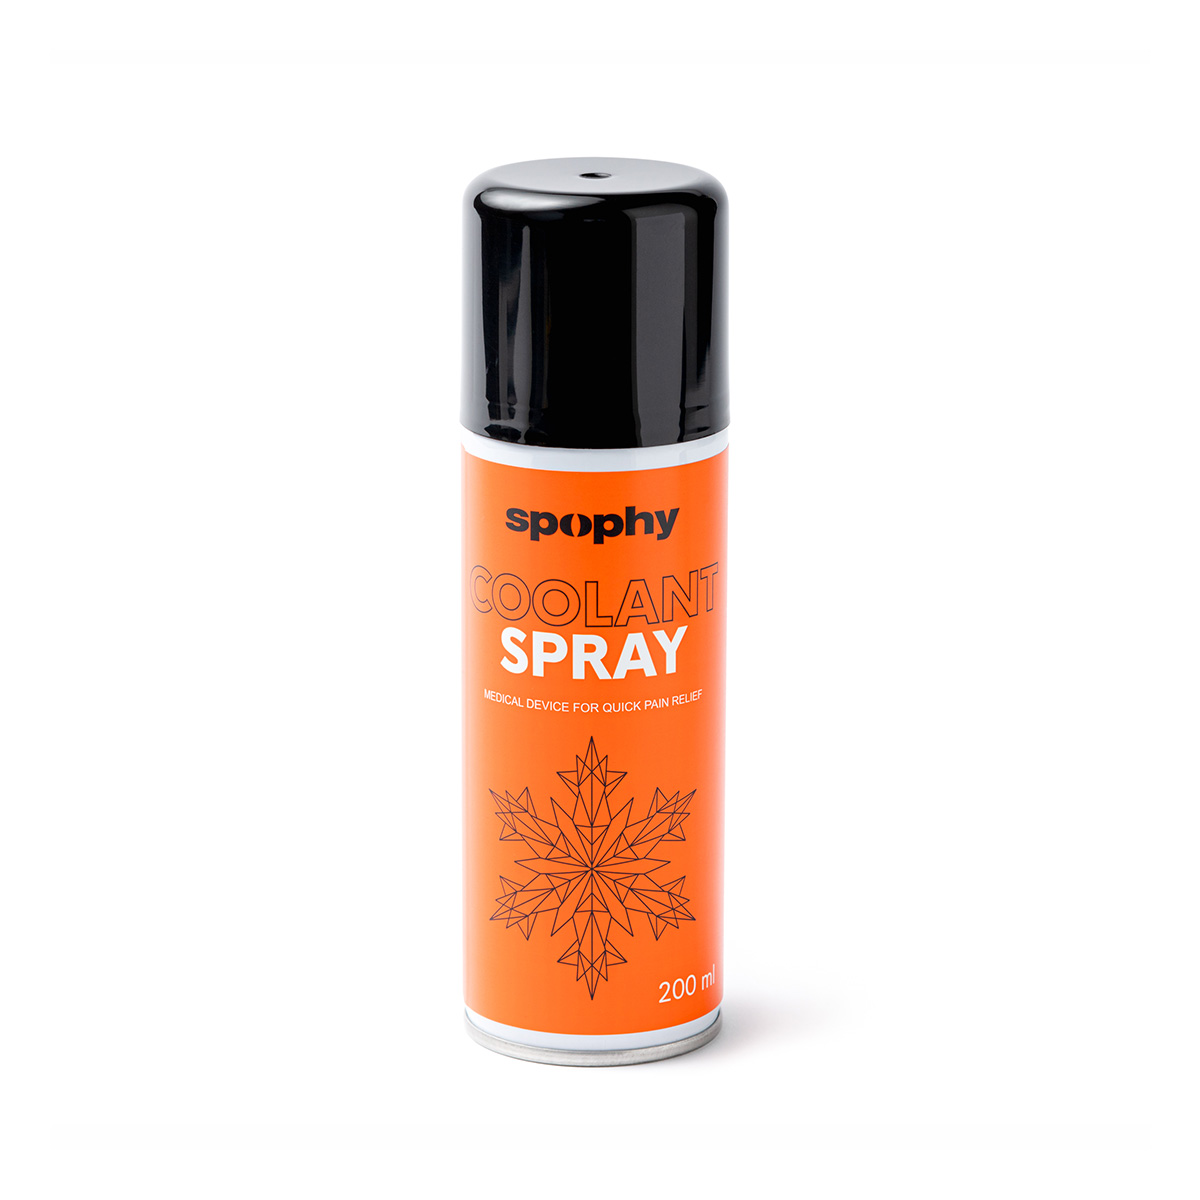 Spophy Coolant Spray chladící sprej 200 ml